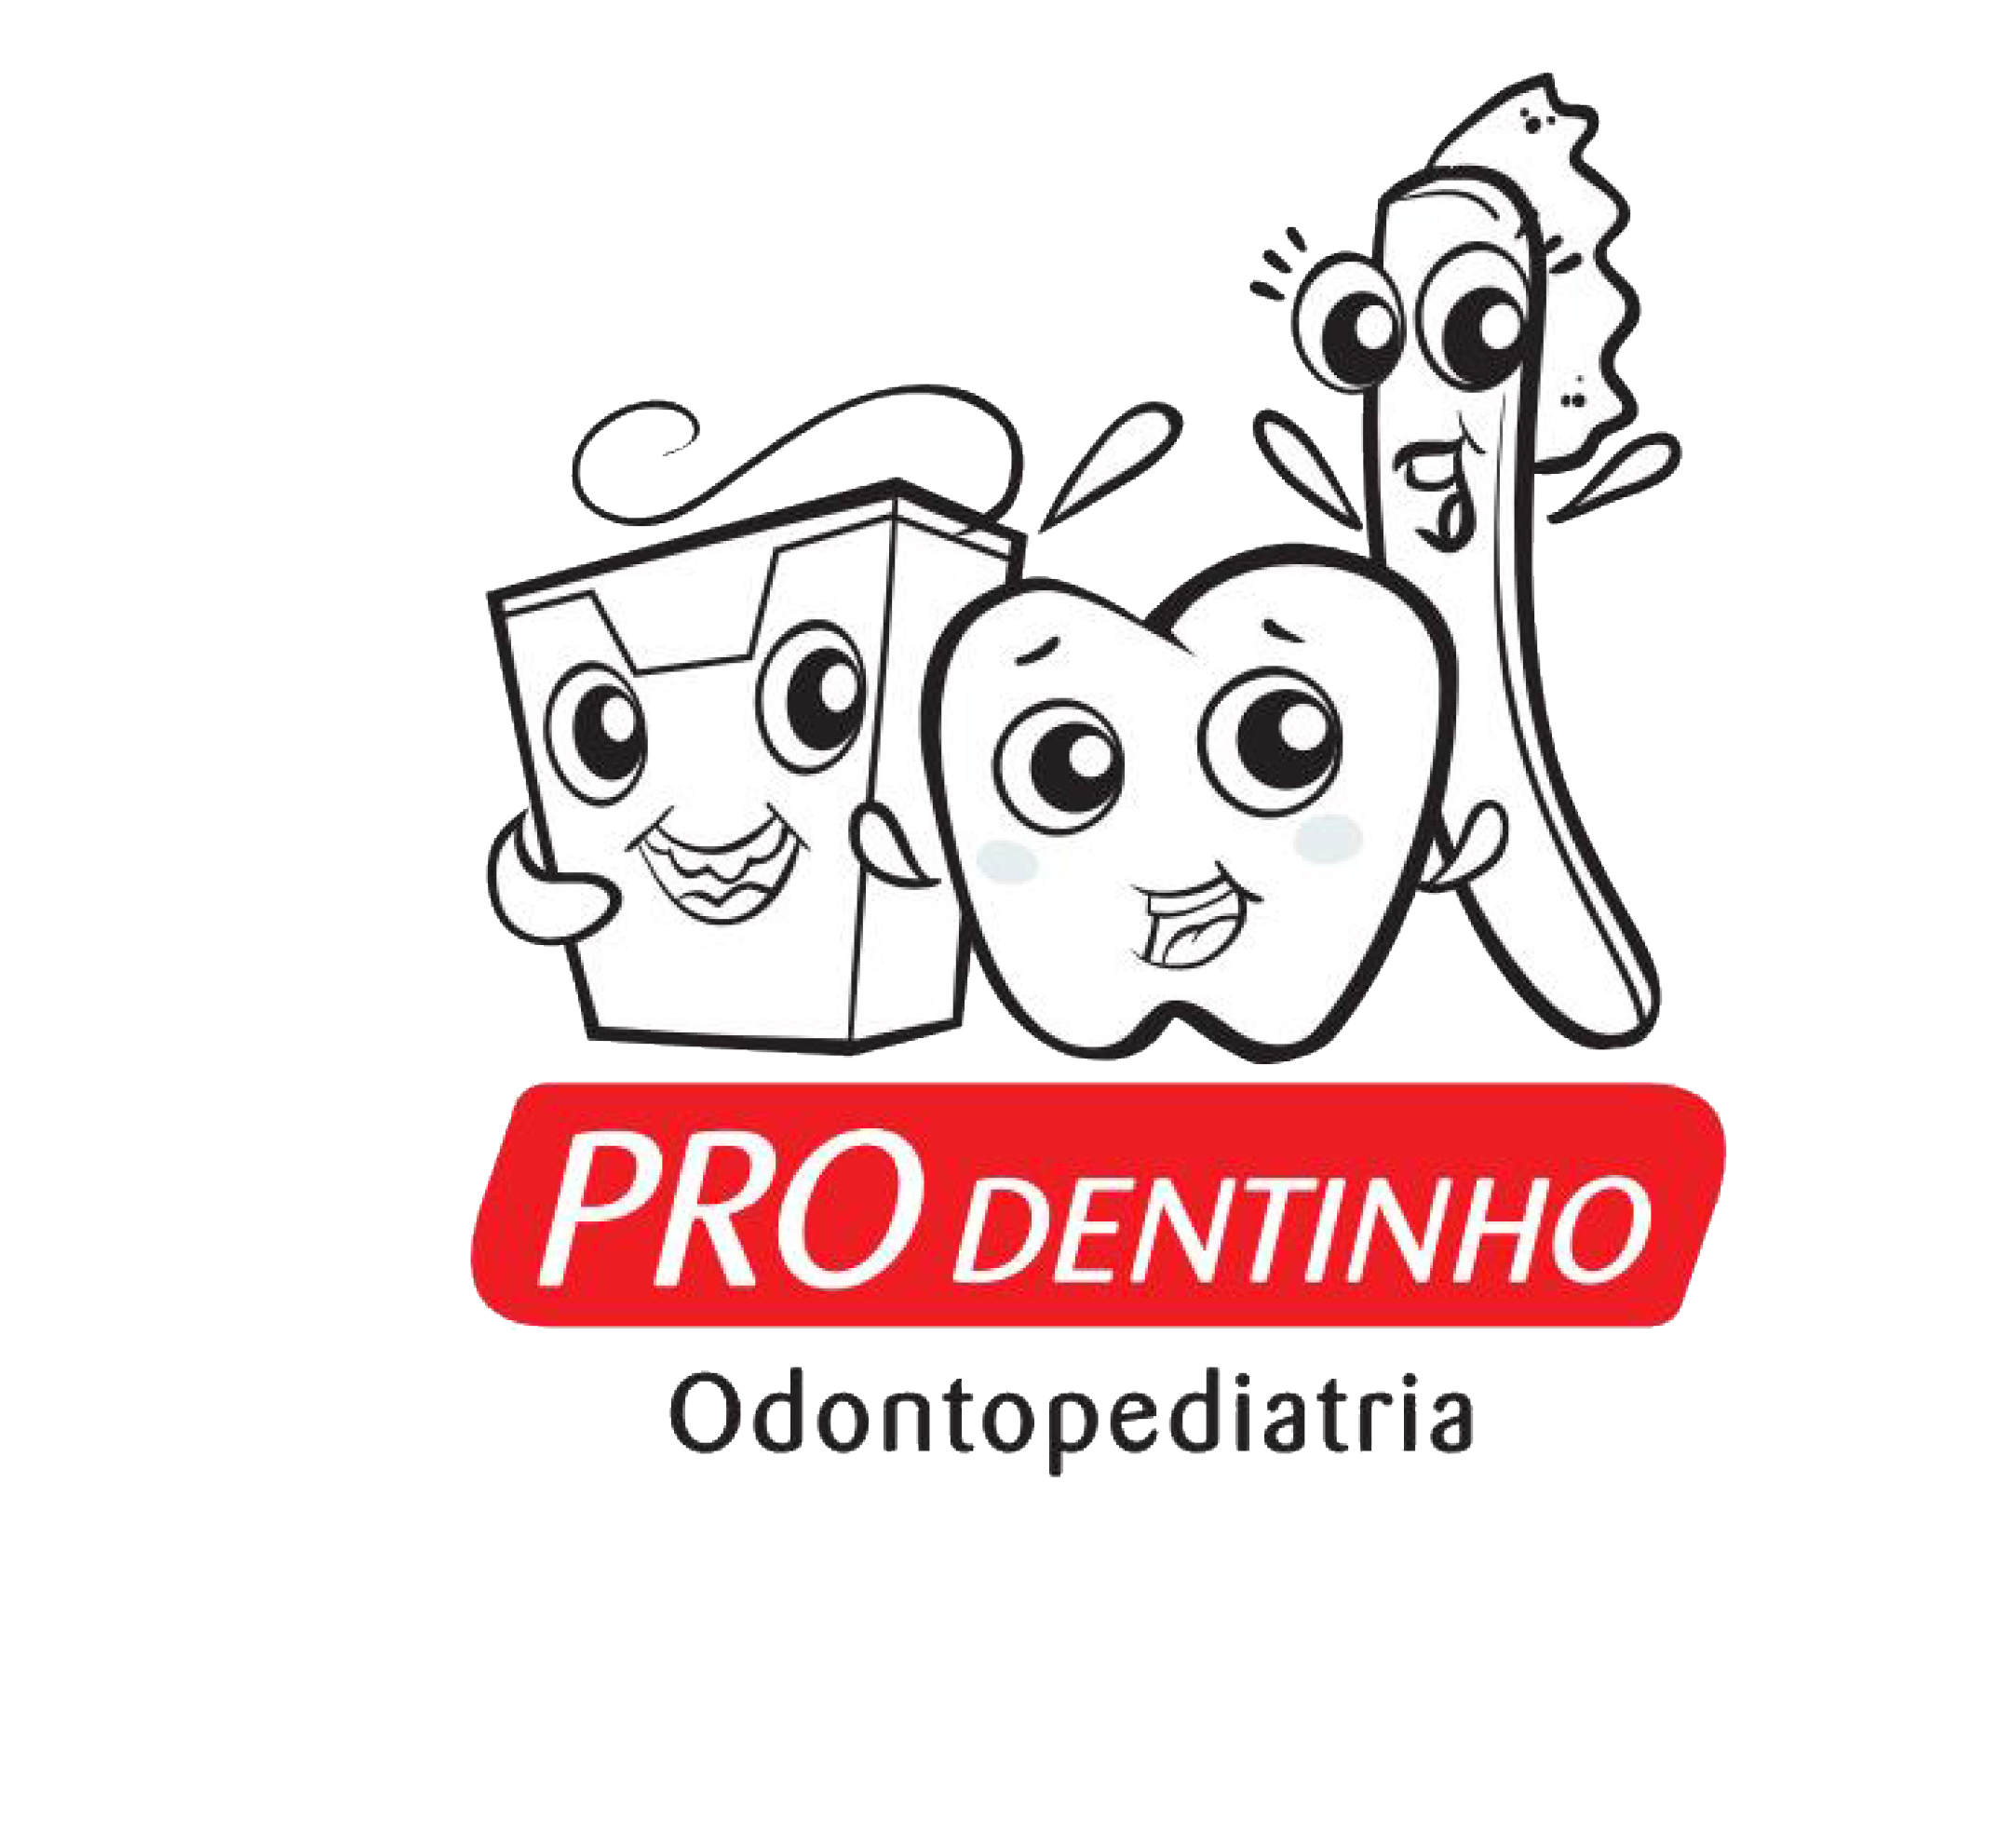 Consultório Infantil - Pro Dentinho - Dr Gustavo Rendak - Clinico Geral e Ortodontista. Dra Fernanda Oliveira - Clinico Geral e Odontopediatria